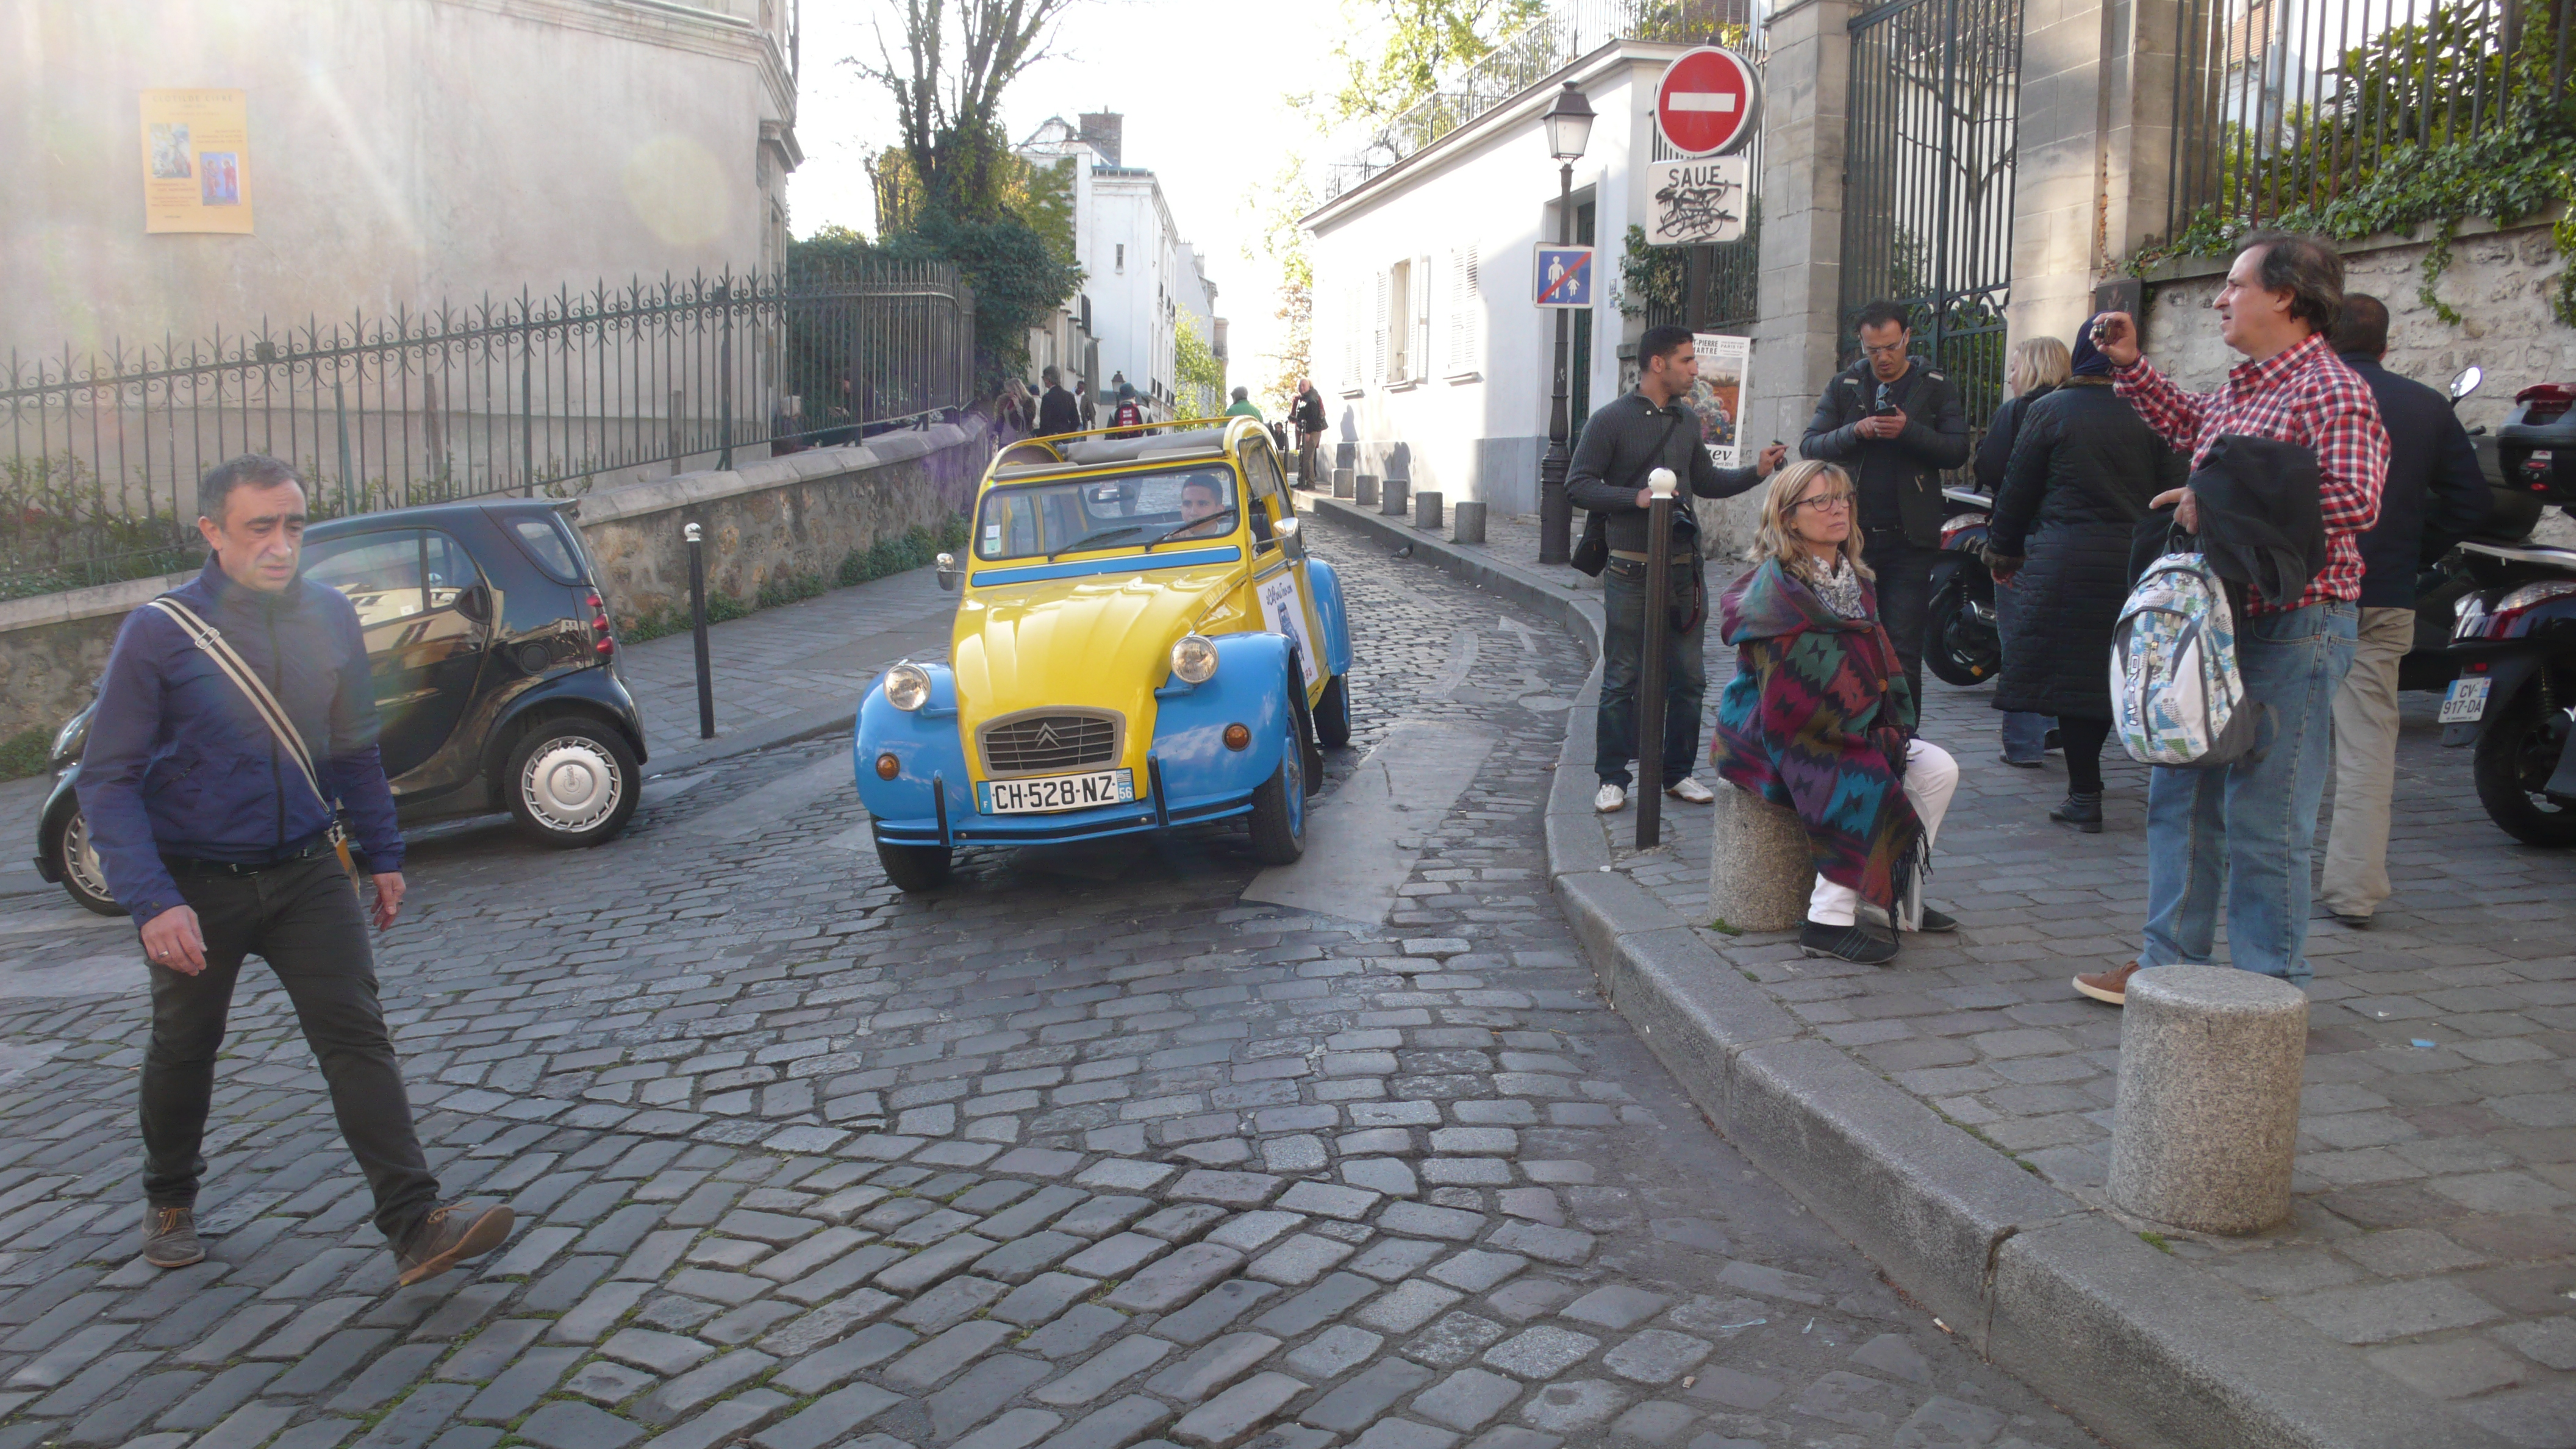 2CV Paris Tour : Visit Paris by 2CV! Heading to Place du Tertre